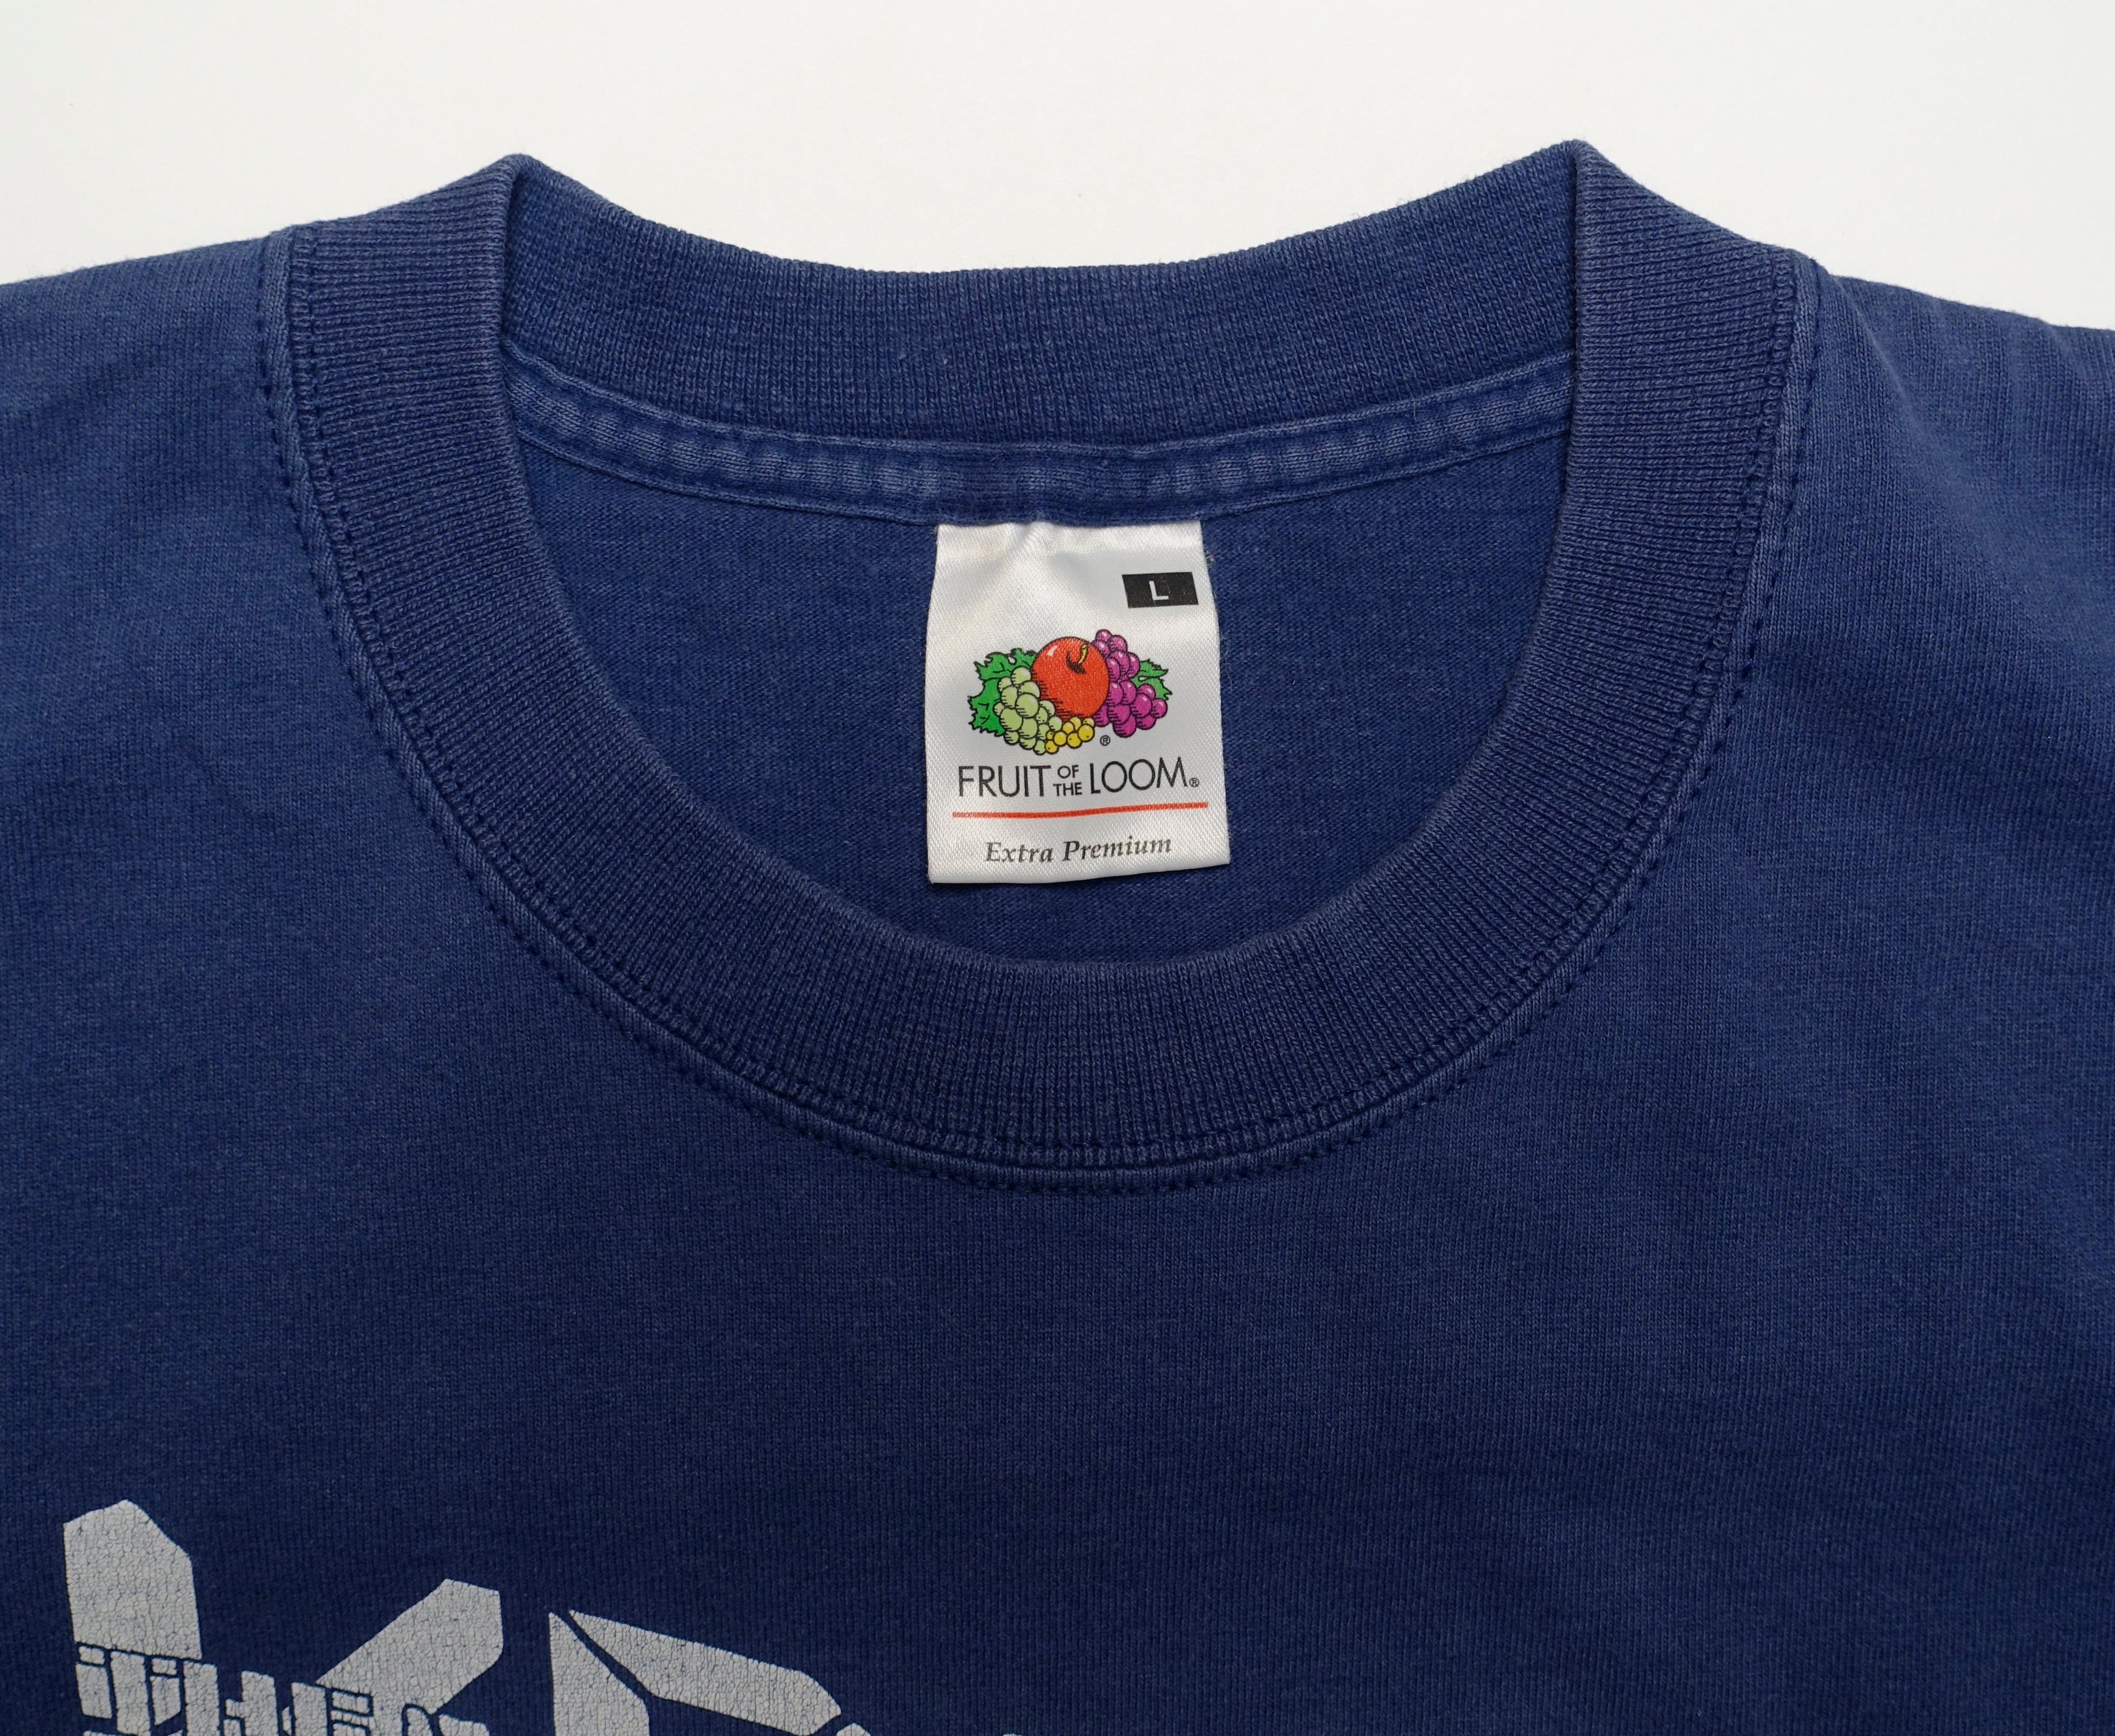 Kraftwerk - 2004 Euro Tour Shirt Size Large